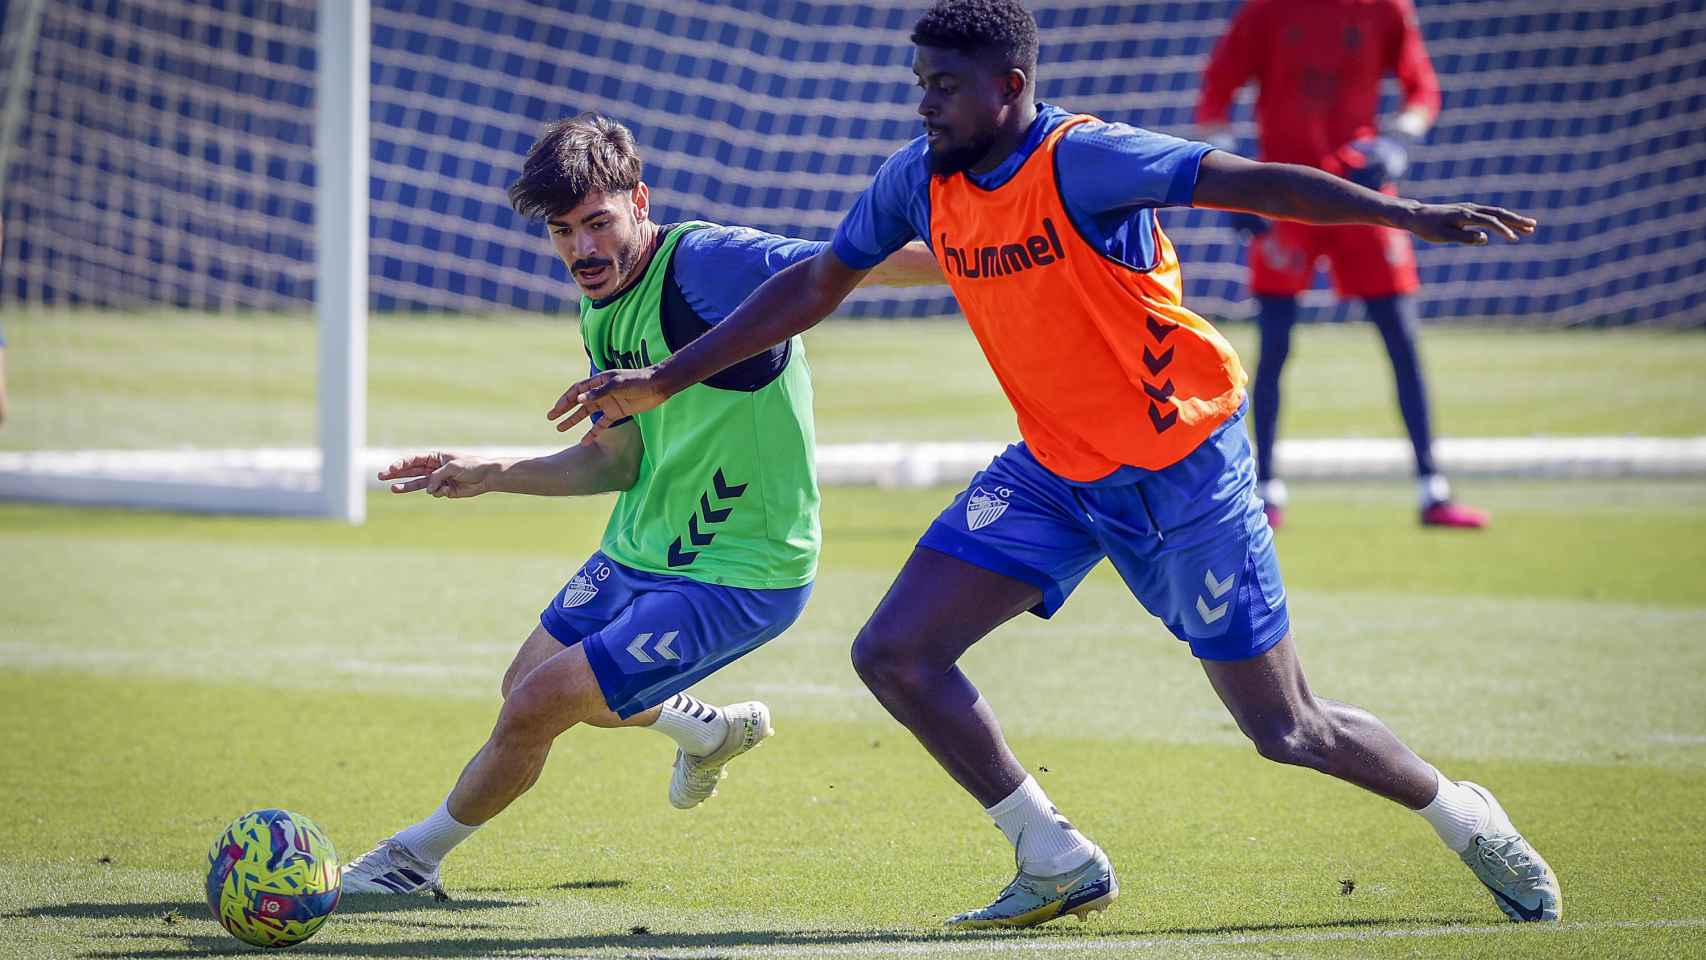 Jozabed y N'Diaye durante un entrenamiento con el Málaga CF